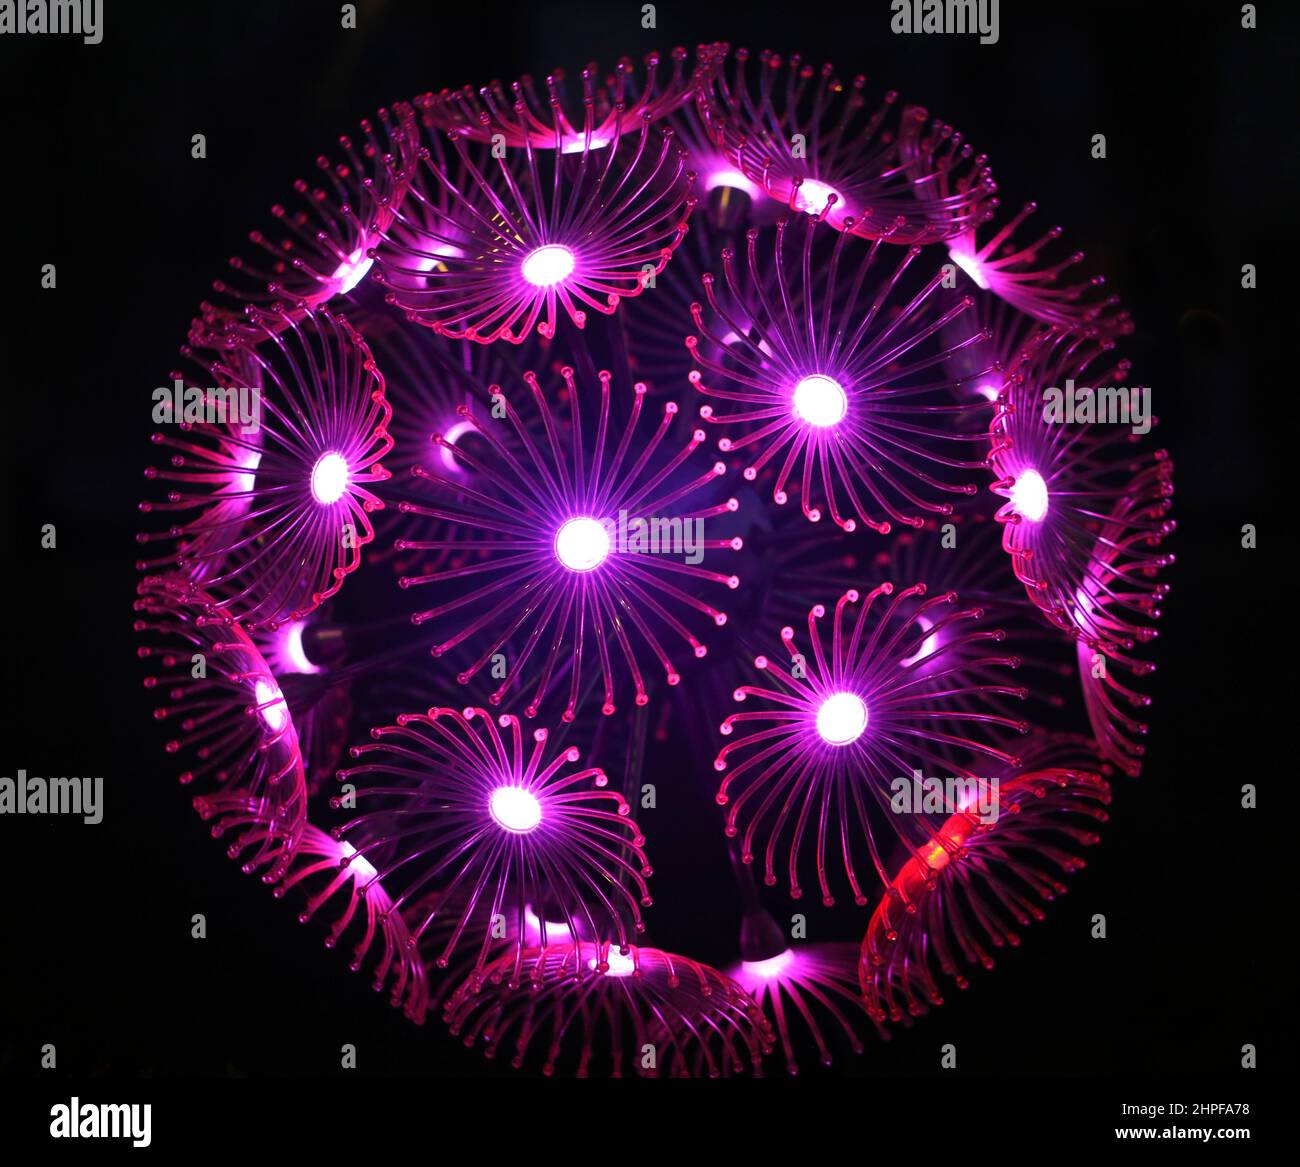 Foto di una sfera di dente di leone incandescente nella notte. Un esempio di design moderno con poster. Foto Stock